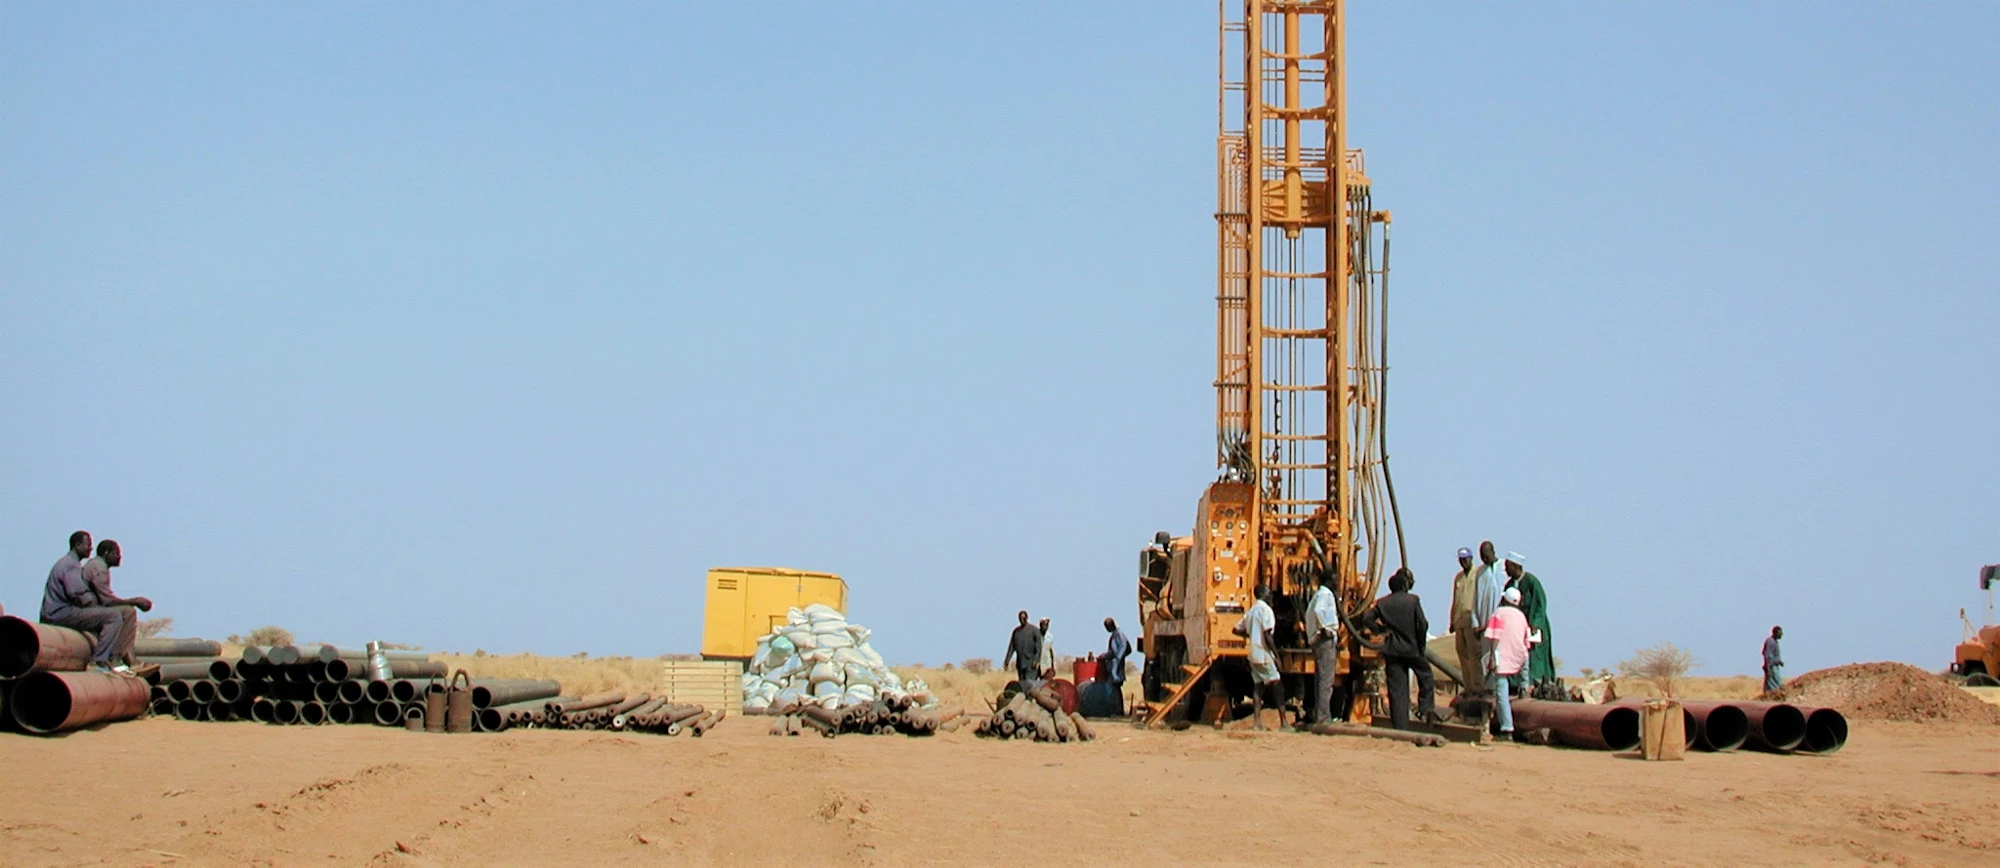 Niger, forage d?exploration des eaux souterraines à Kerboubou. © André Benamour